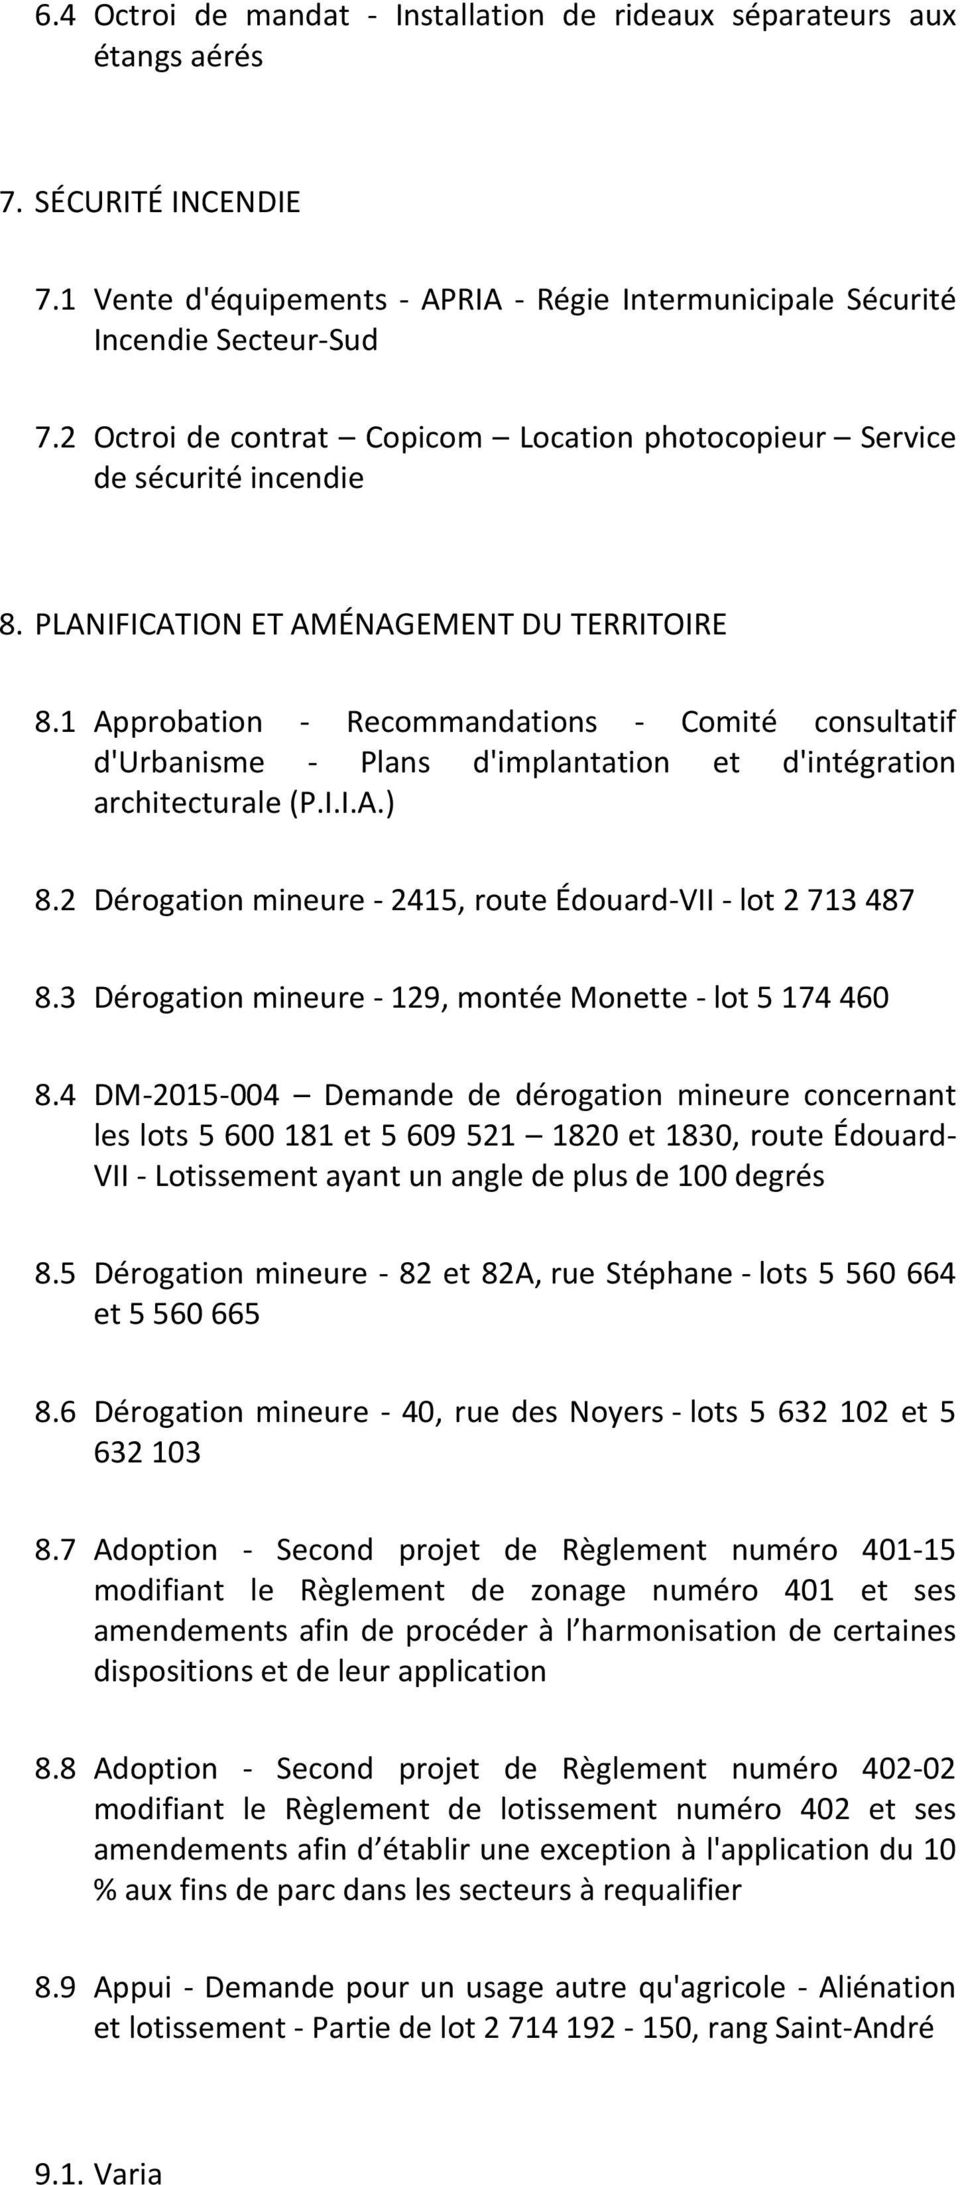 1 Approbation - Recommandations - Comité consultatif d'urbanisme - Plans d'implantation et d'intégration architecturale (P.I.I.A.) 8.2 Dérogation mineure - 2415, route Édouard-VII - lot 2 713 487 8.